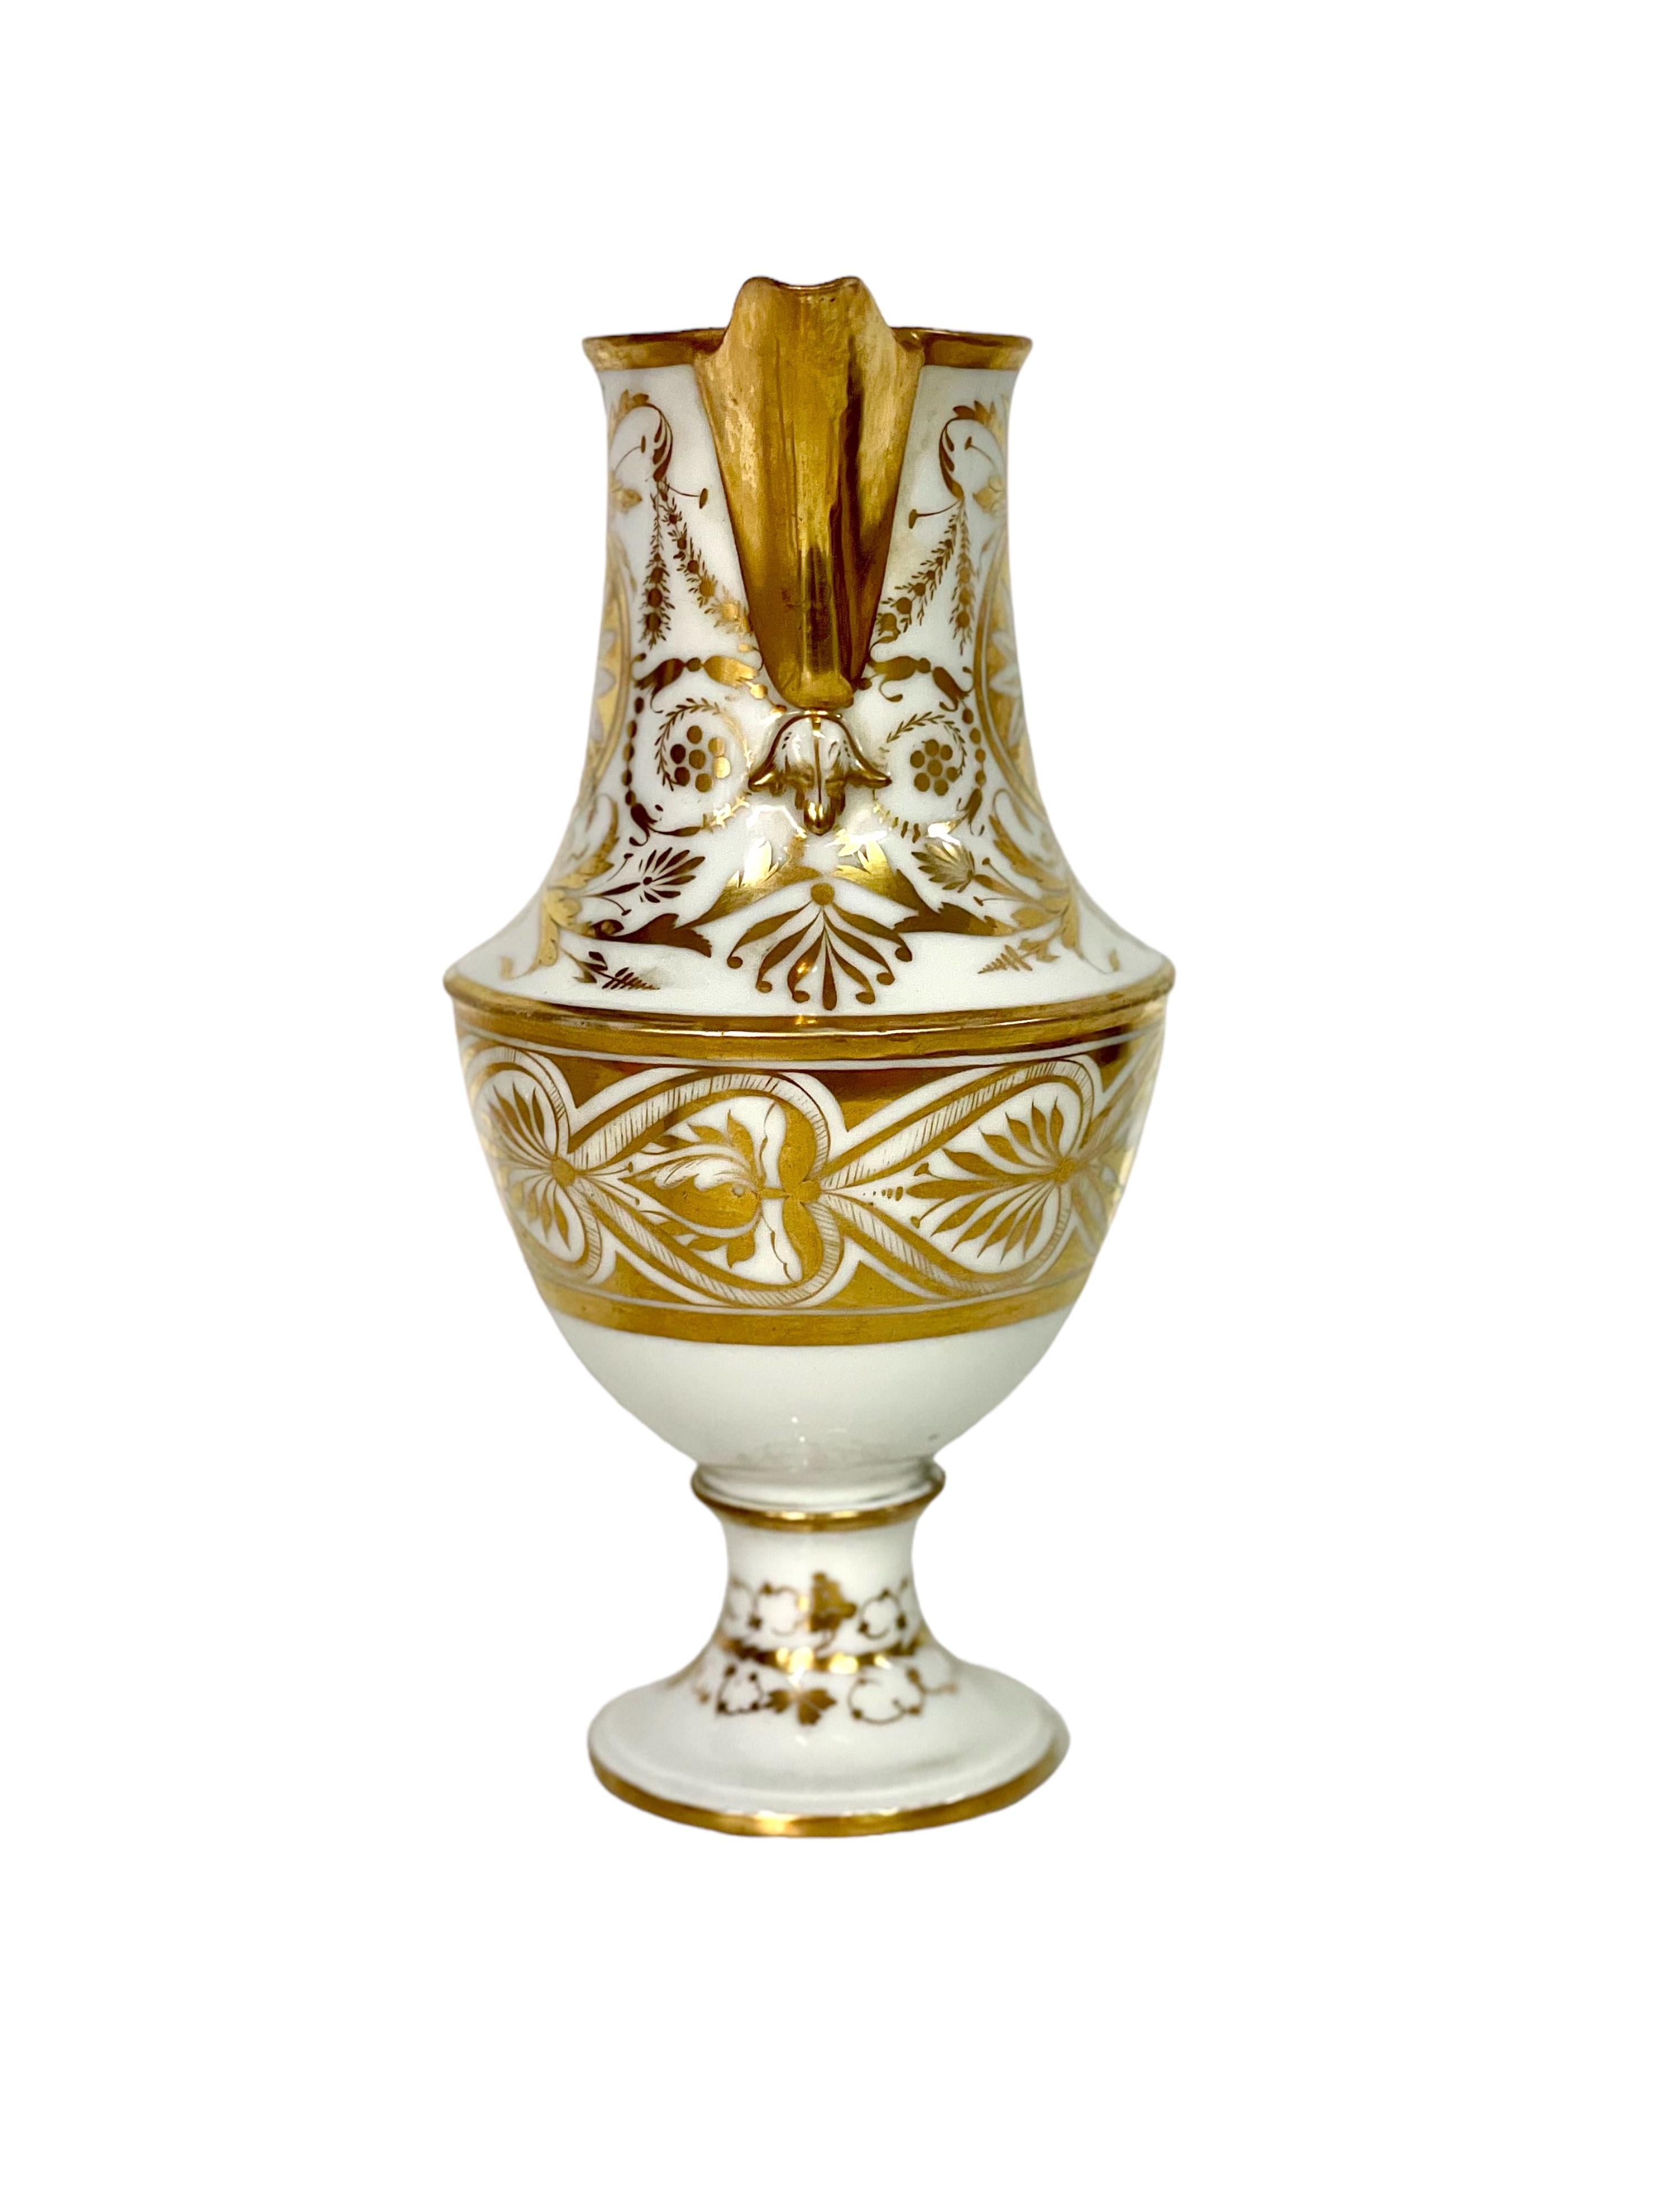 19th Century Empire Period Porcelain de Paris Water Pitcher with Gilt Decoration For Sale